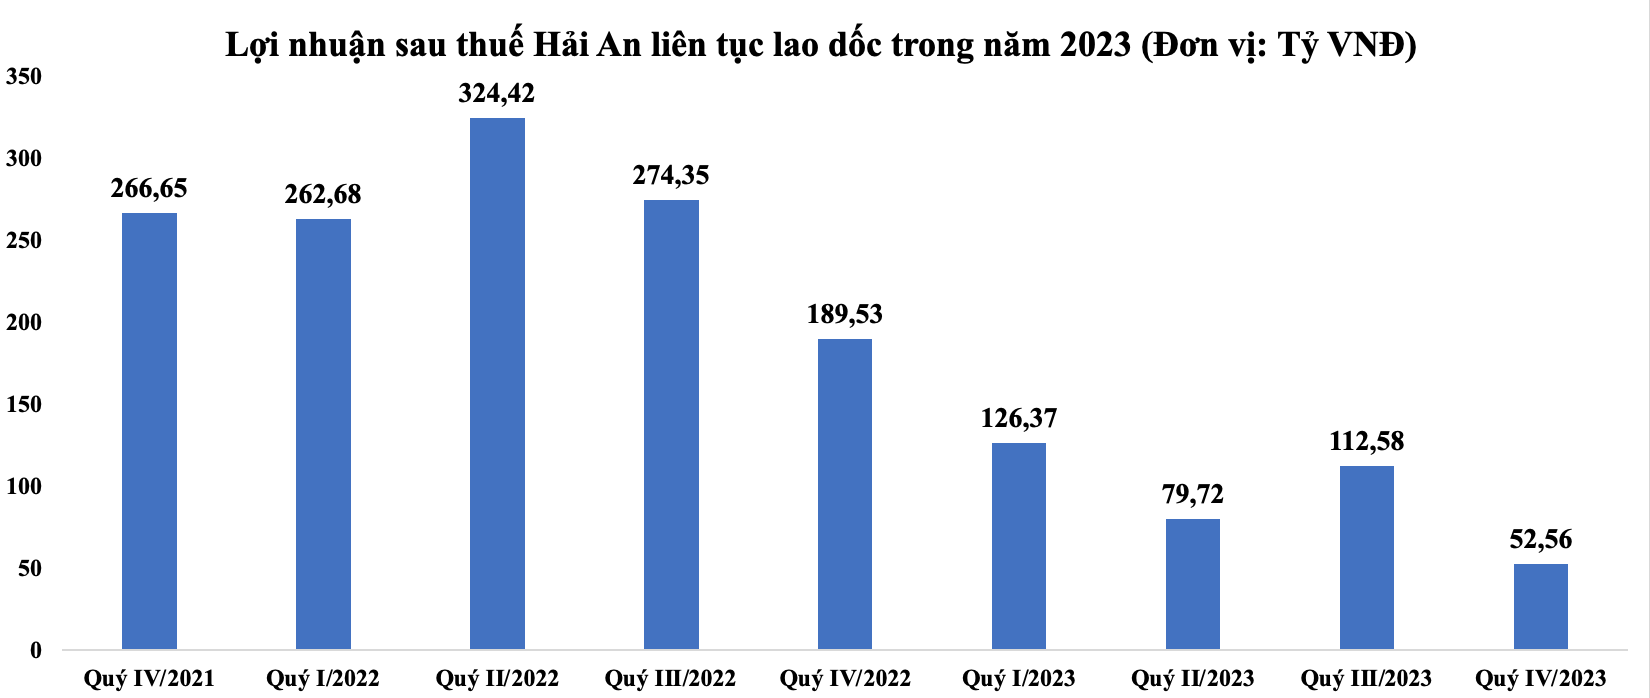 Lợi nhuận sau thuế Hải An liên tục lao dốc trong năm 2023 (Đơn vị: Tỷ VNĐ) - Nguồn: BCTC)